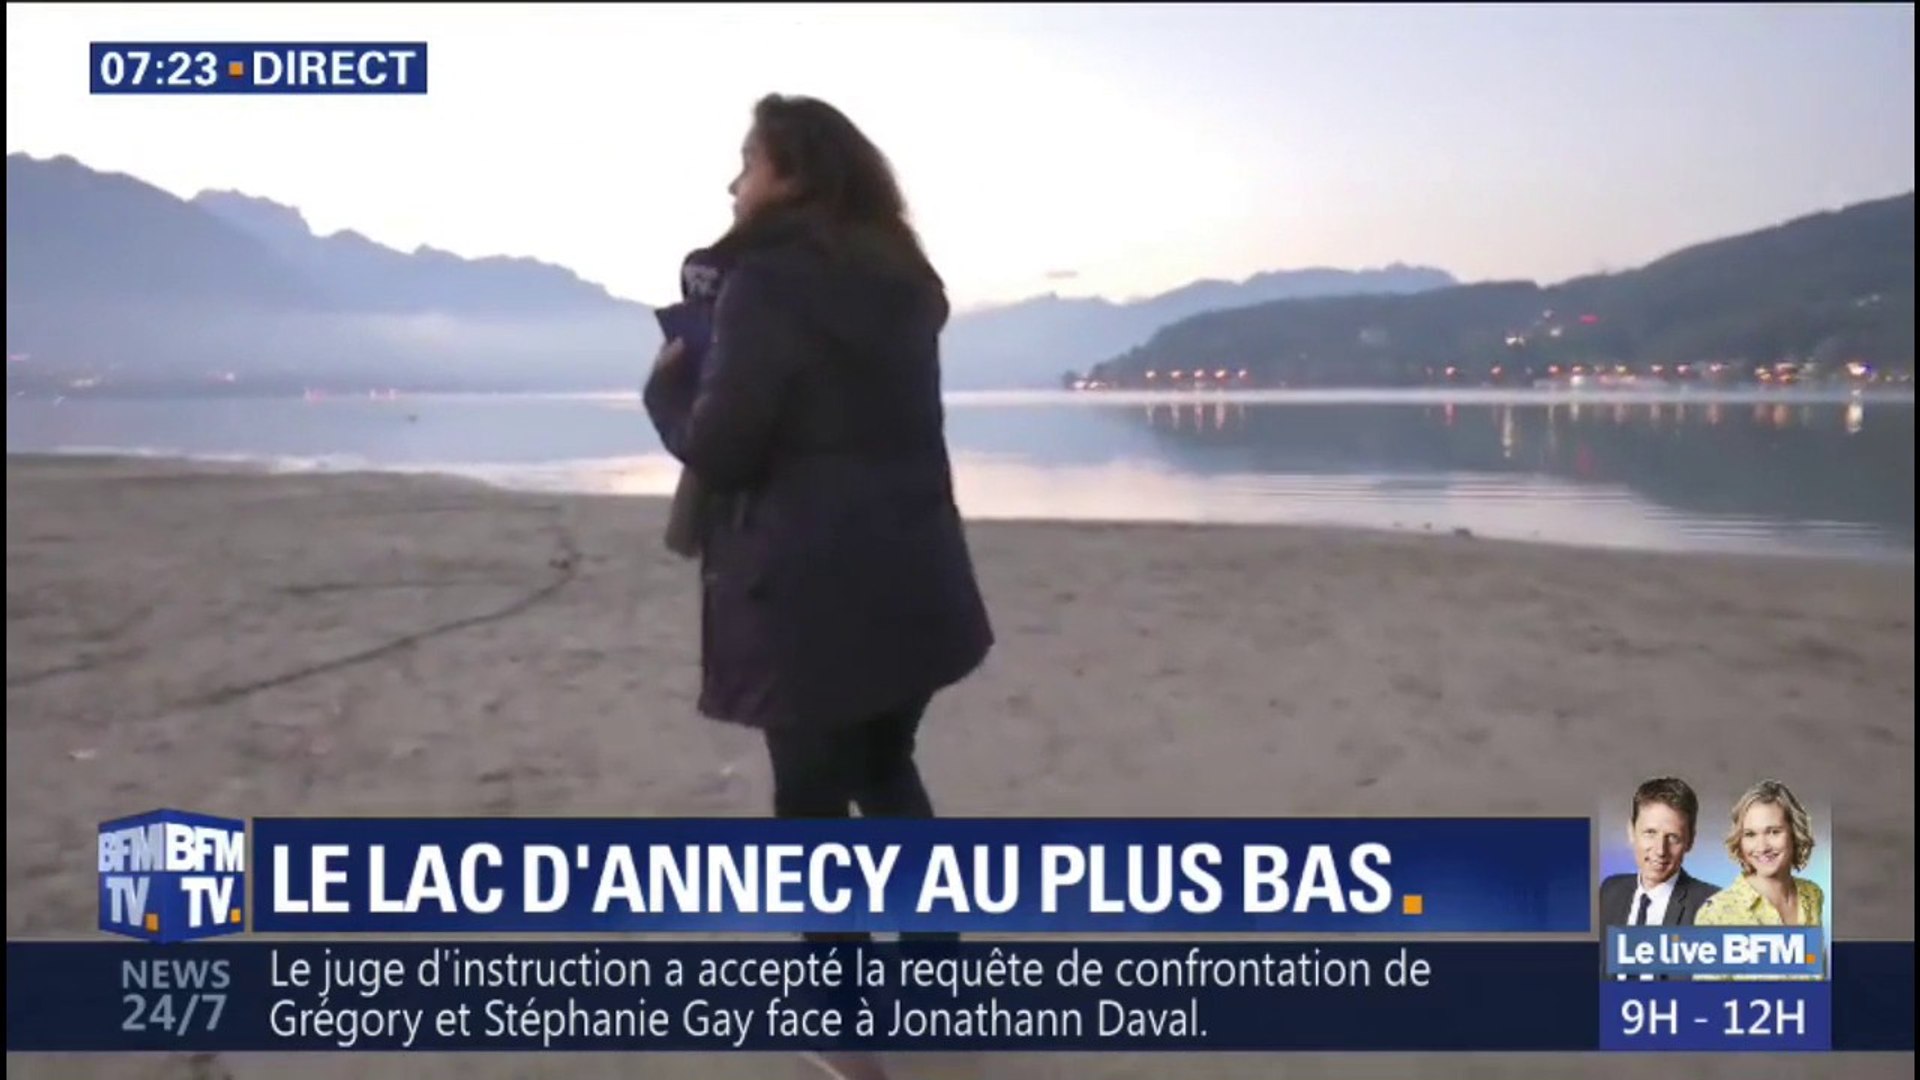 Les bords du lac d'Annecy sont complètement à sec, Ashley Chevalier nous  montre son niveau inquiétant - Vidéo Dailymotion